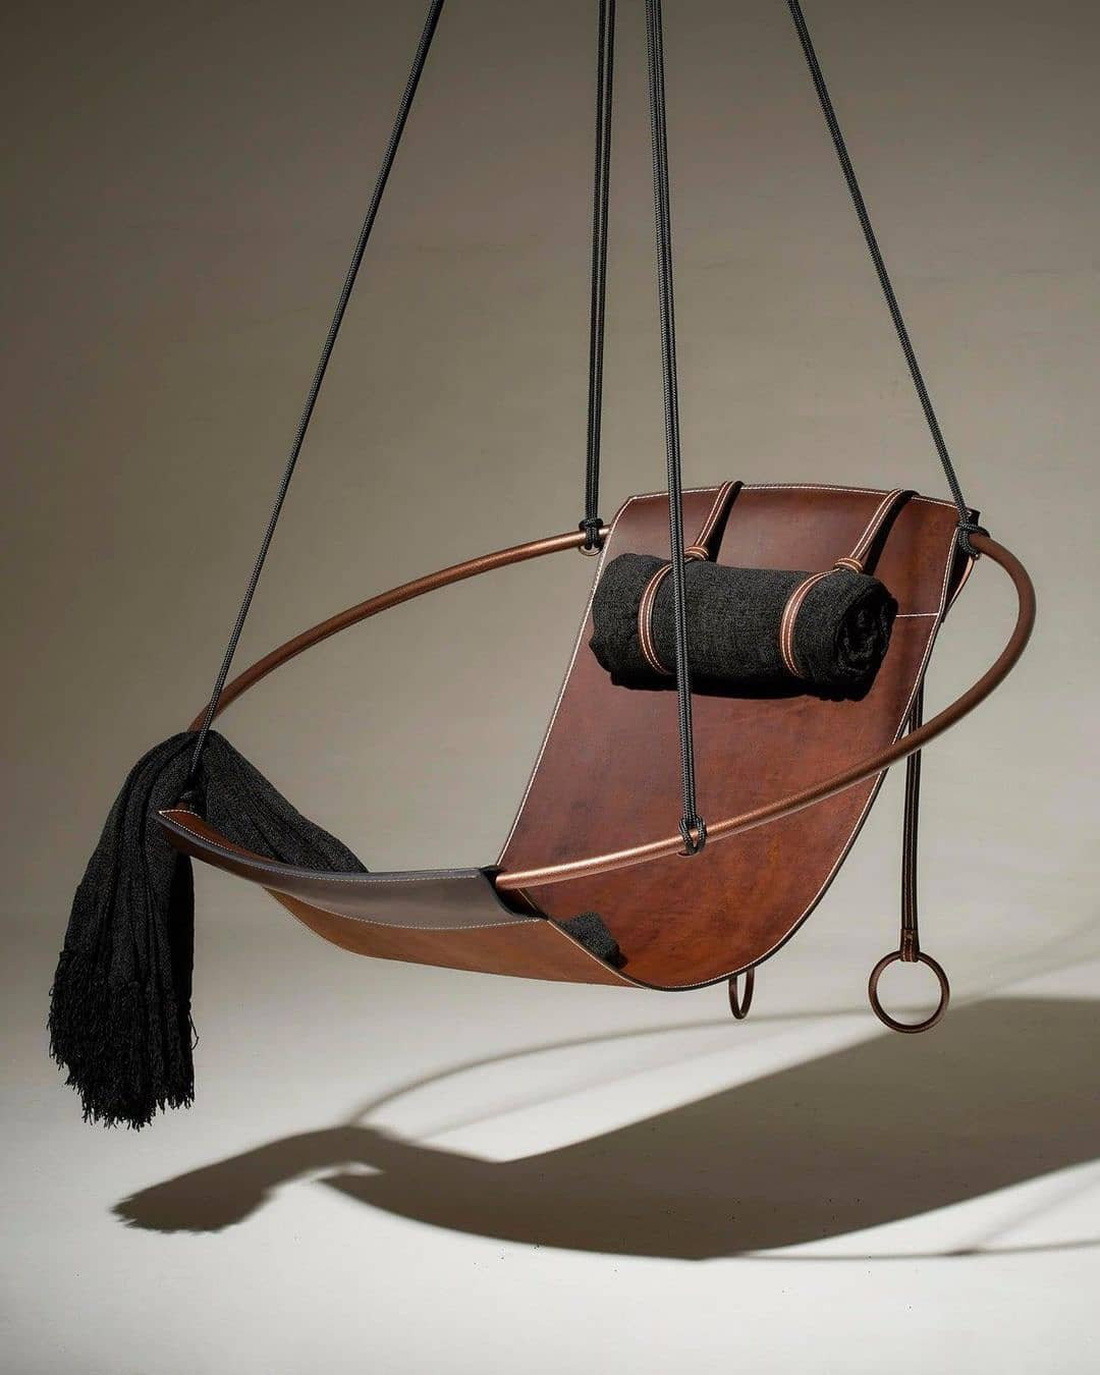 Một chiếc ghế treo cách điệu, phù hợp với các không gian sống đương đại - Ảnh: BHG